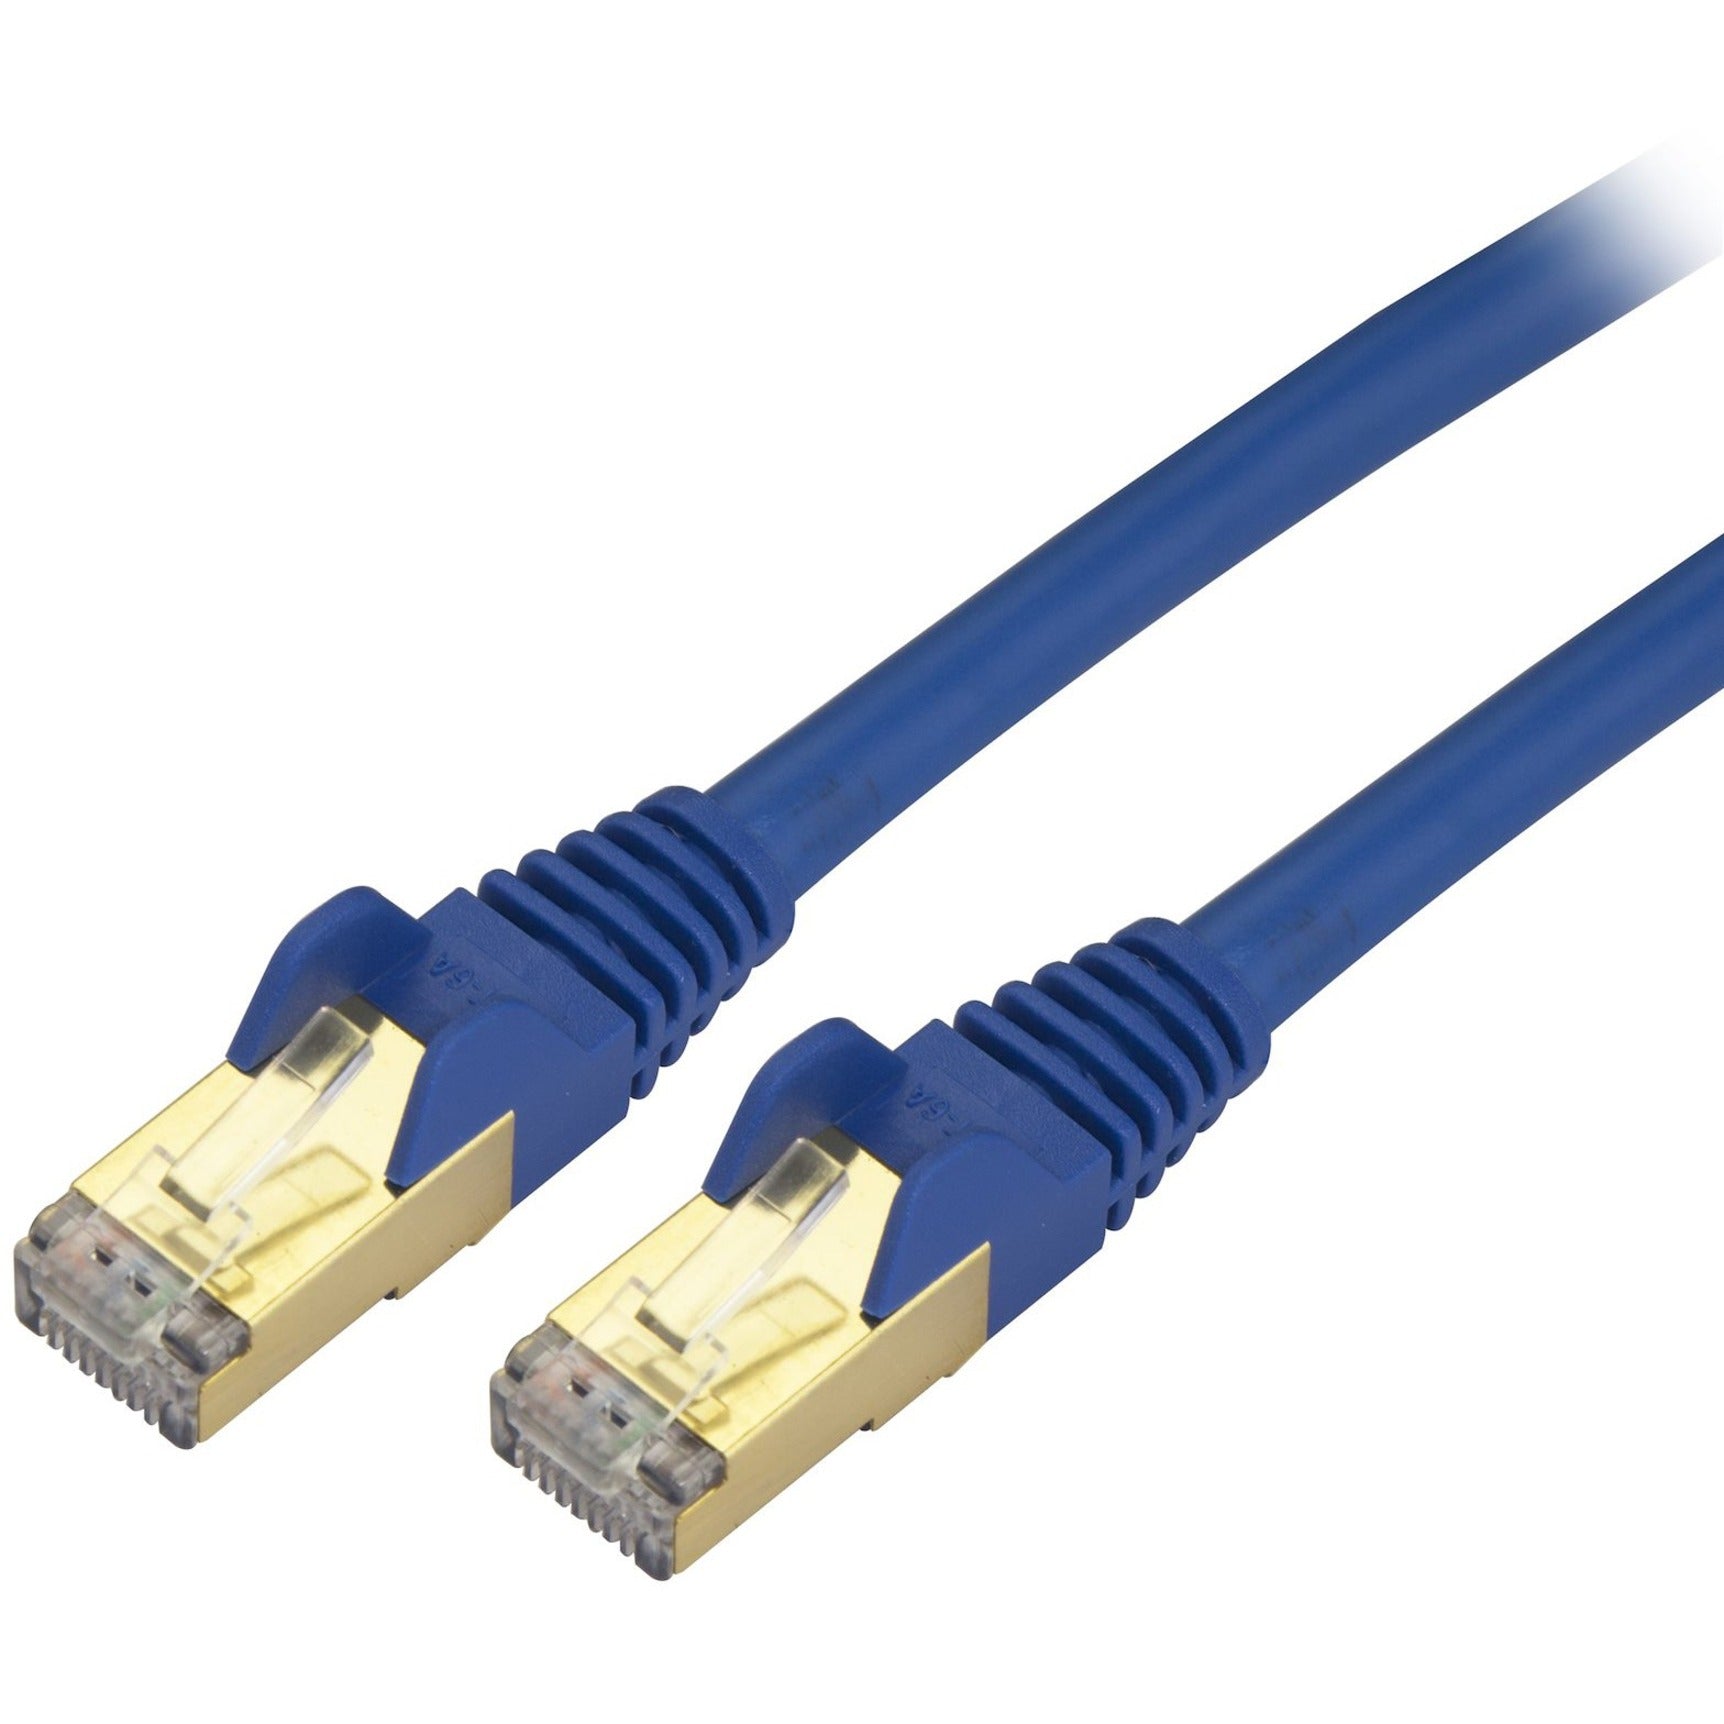 StarTech.com C6ASPAT20BL Cat6a Ethernet Patch Cable - Shielded (STP) - 20 ft. Blau Langes Ethernet-Kabel